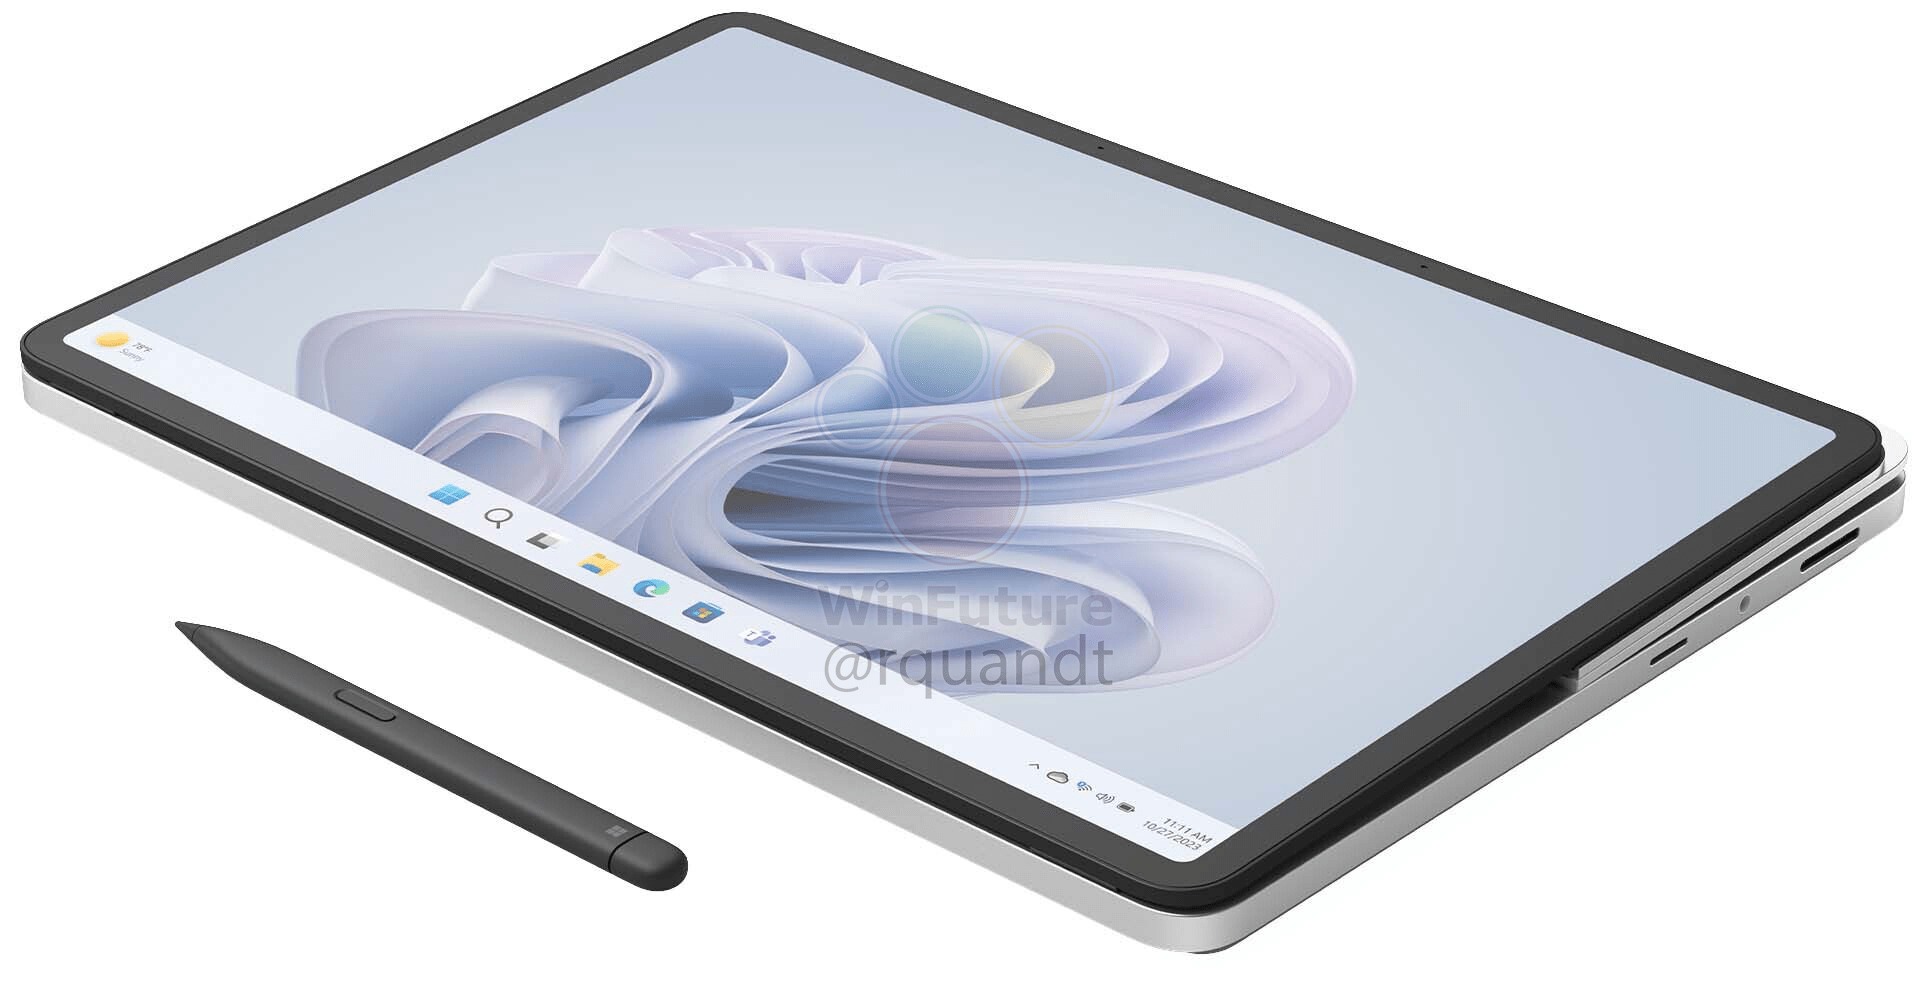 Microsoft announces Surface Laptop Studio, Duo 2, Pro 8, Pro X, Go 3